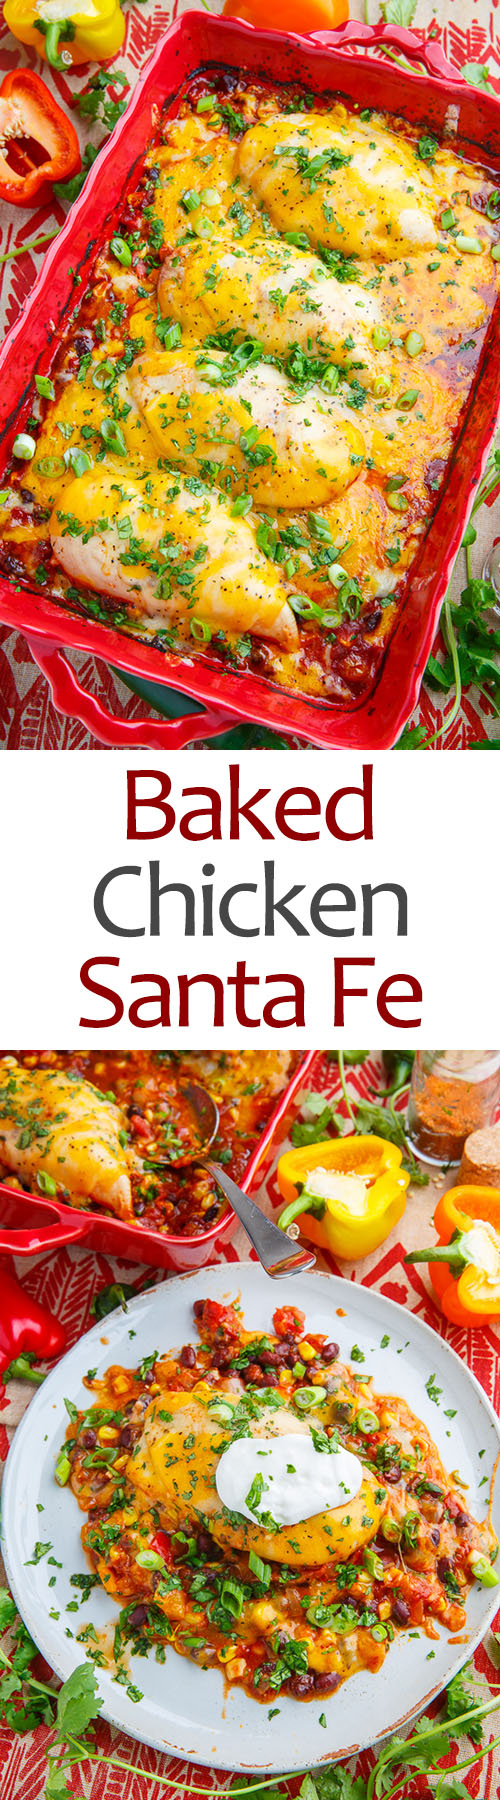 Baked Chicken Santa Fe